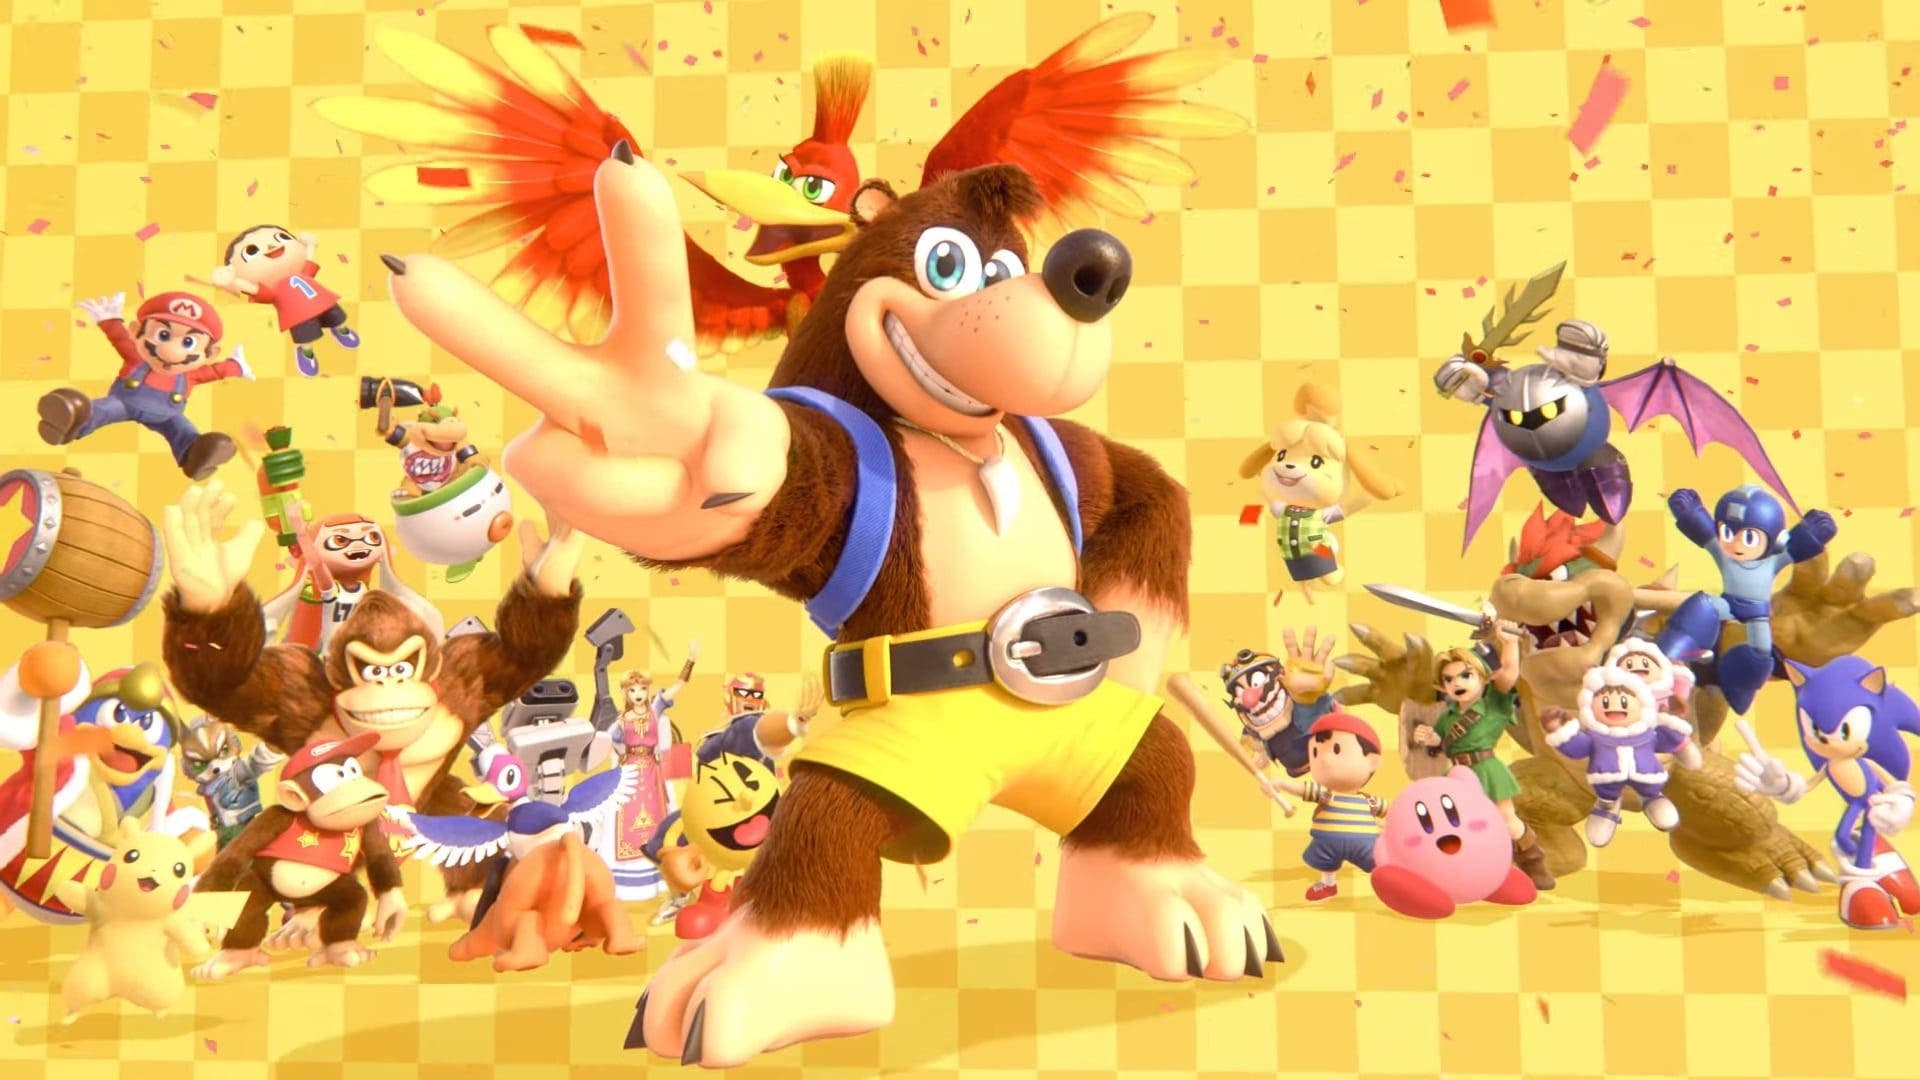 El artista de Diddy Kong Racing es el responsable del diseño definitivo de Banjo-Kazooie en Super Smash Bros. Ultimate